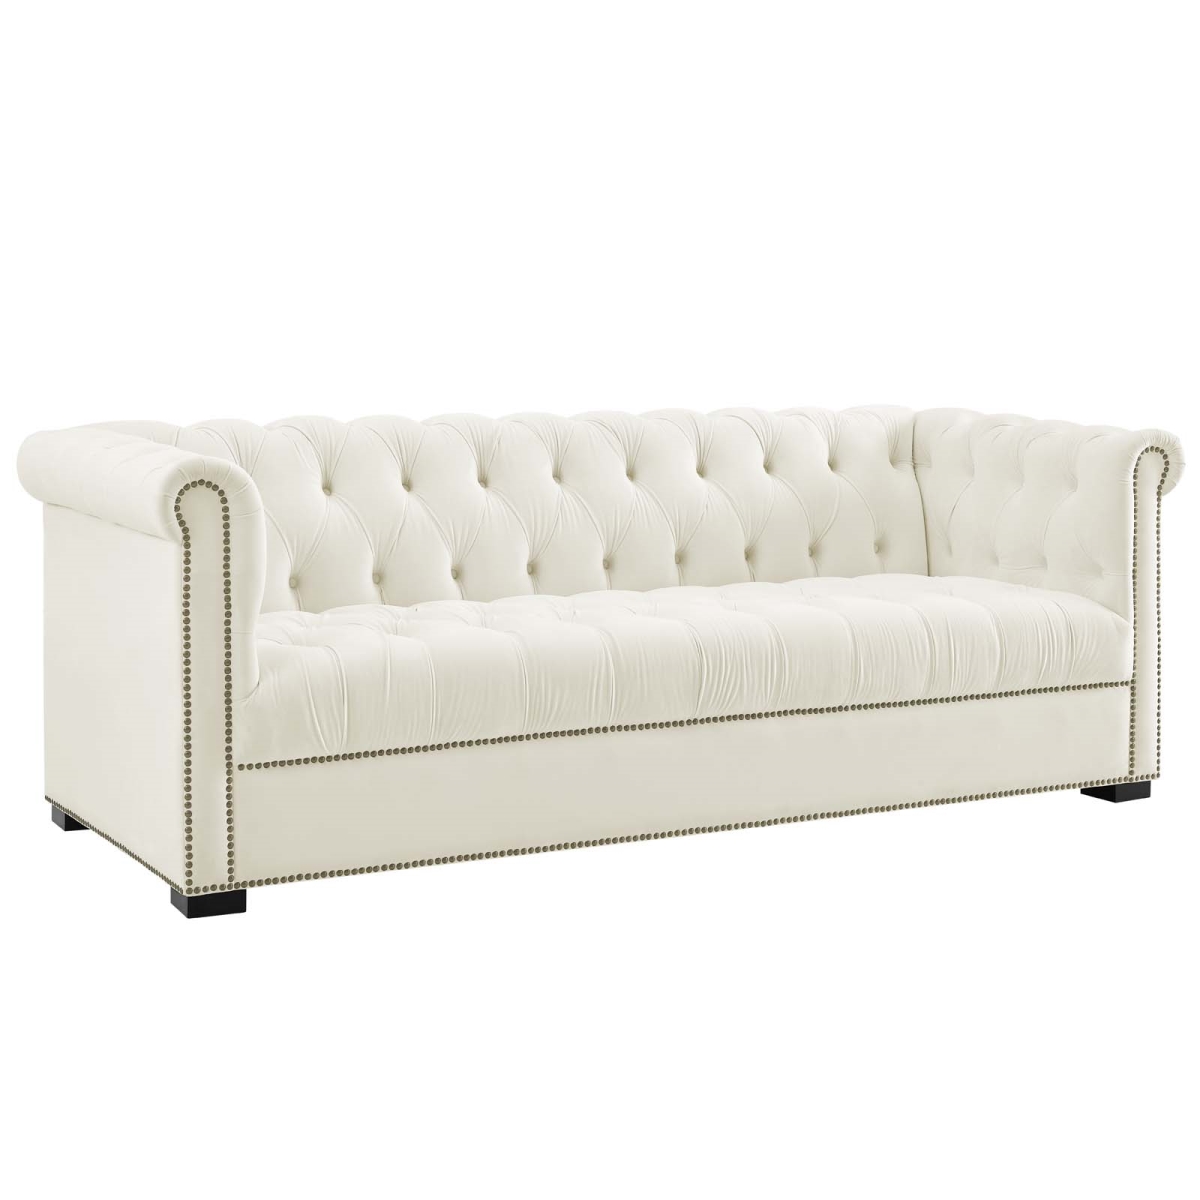 Eei-3064-ivo Heritage Upholstered Velvet Sofa - Ivory, 30.5 X 86 X 35 In.